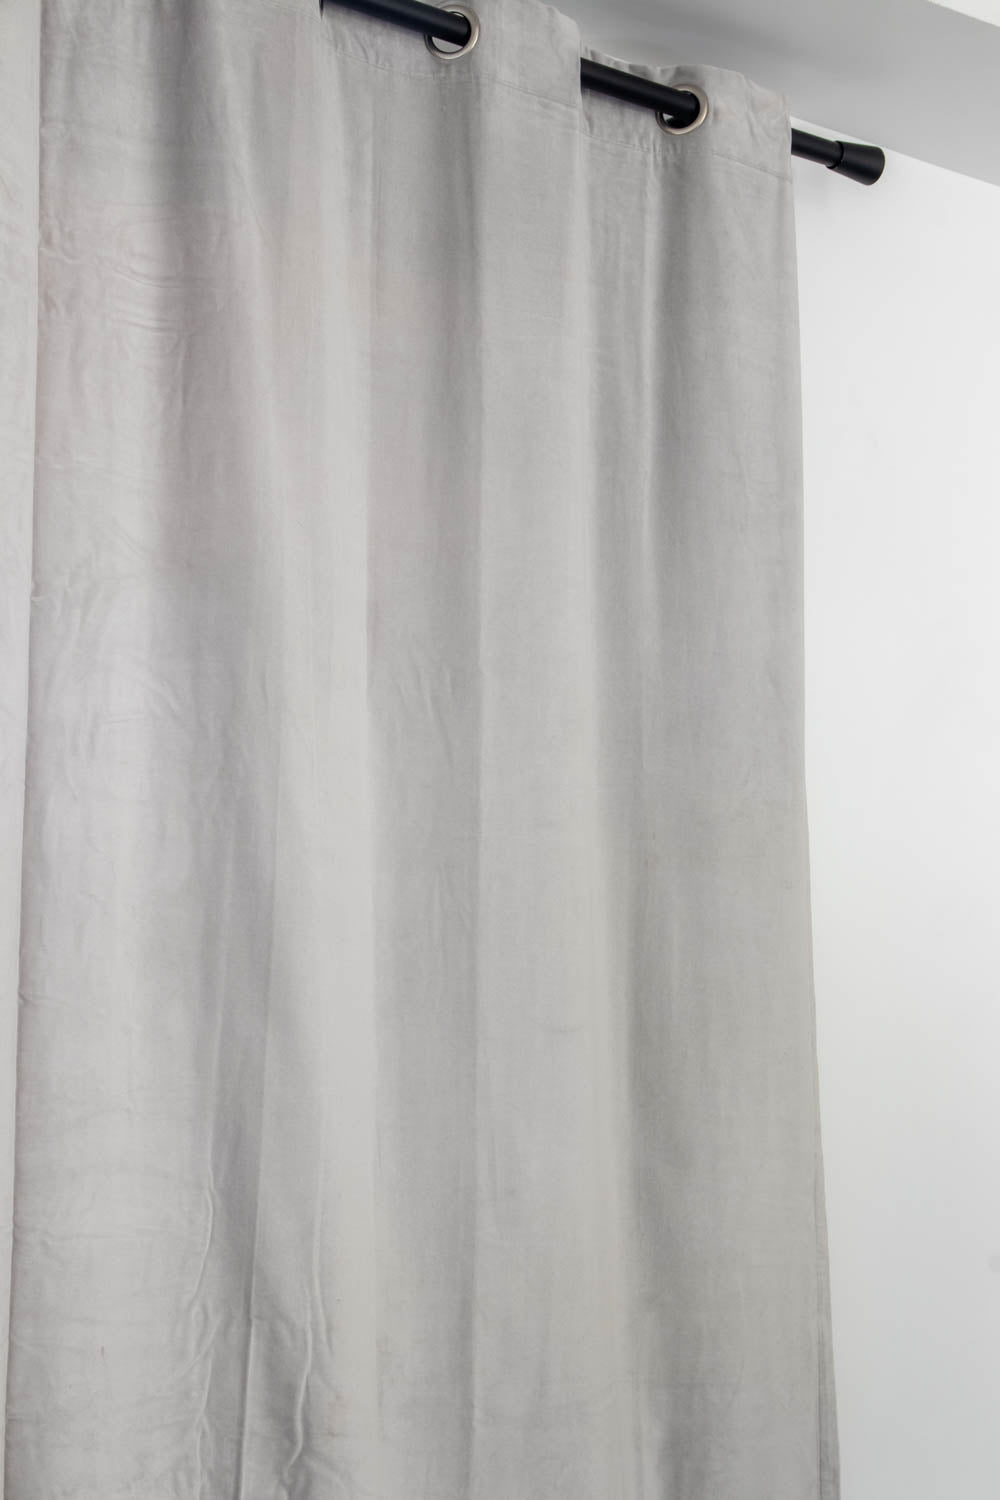 Rideaux en velours de coton doublés Elise 140x280 cm - Vivaraise